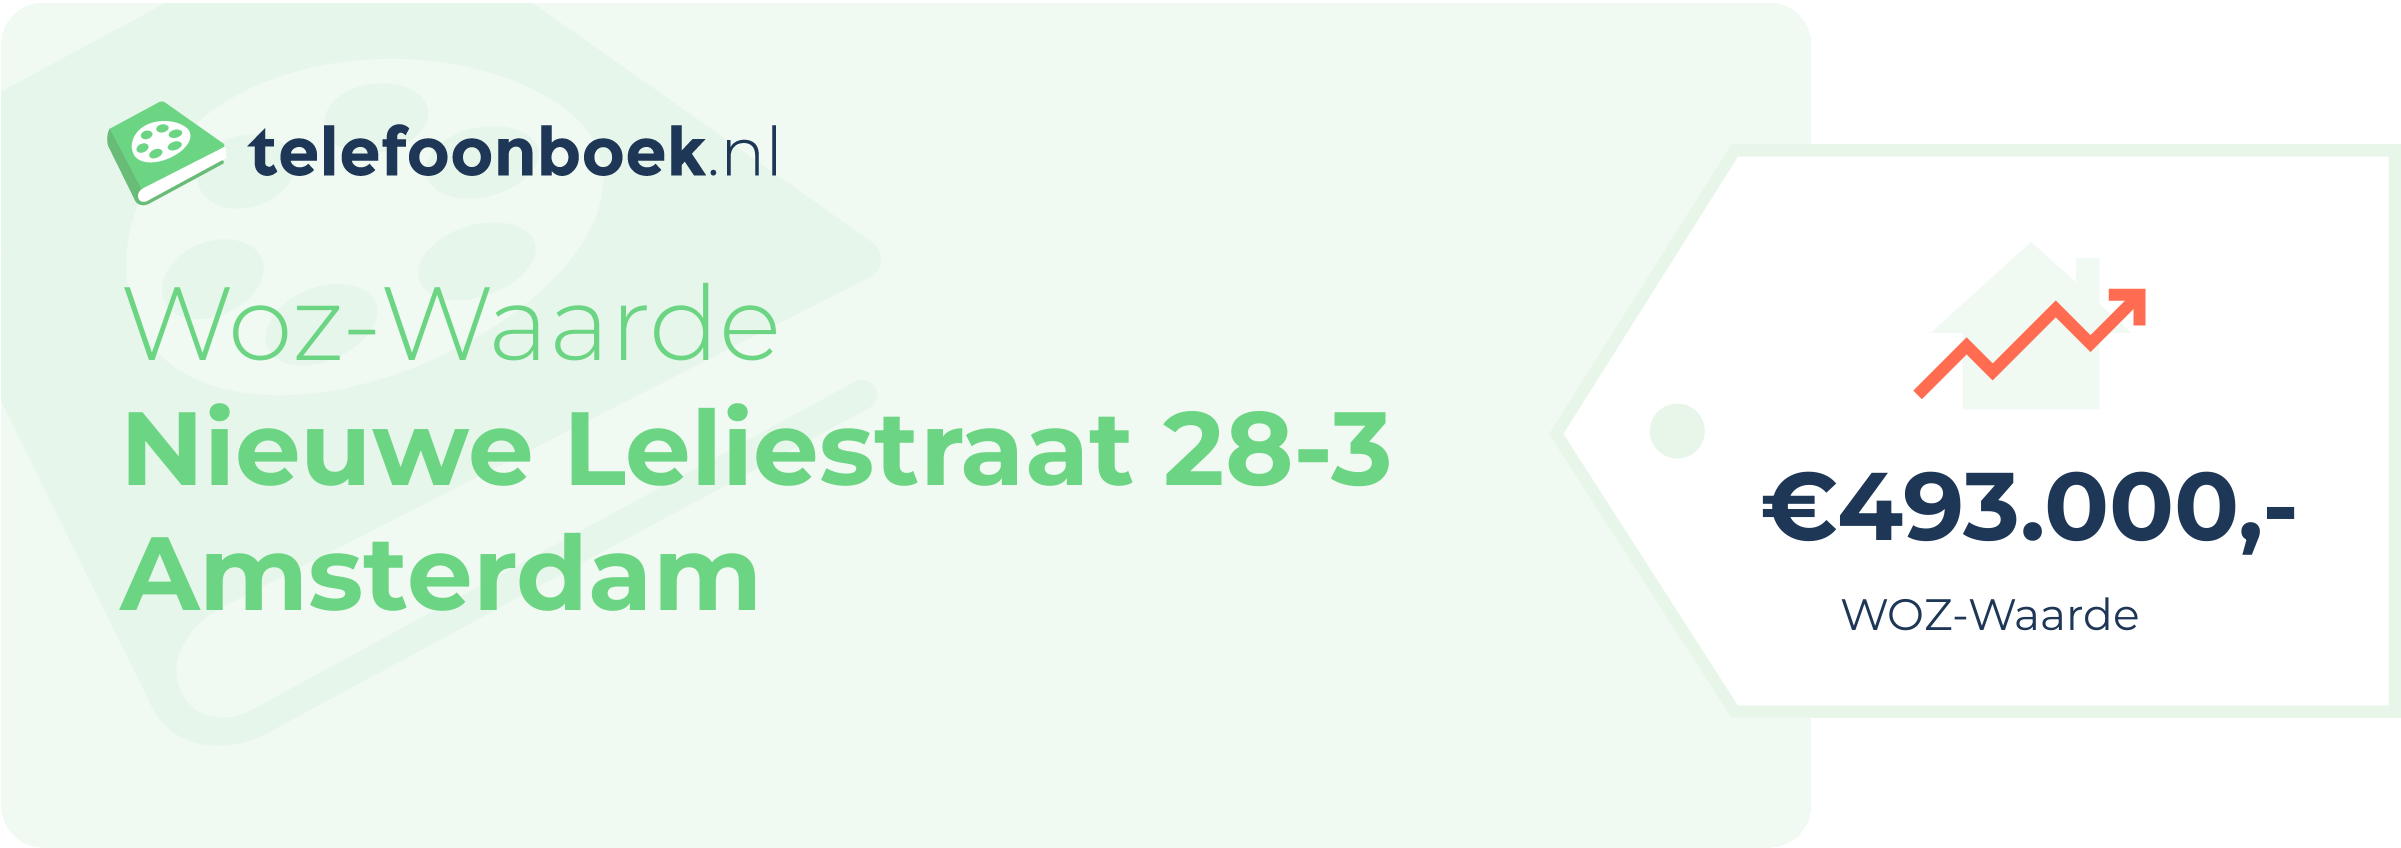 WOZ-waarde Nieuwe Leliestraat 28-3 Amsterdam